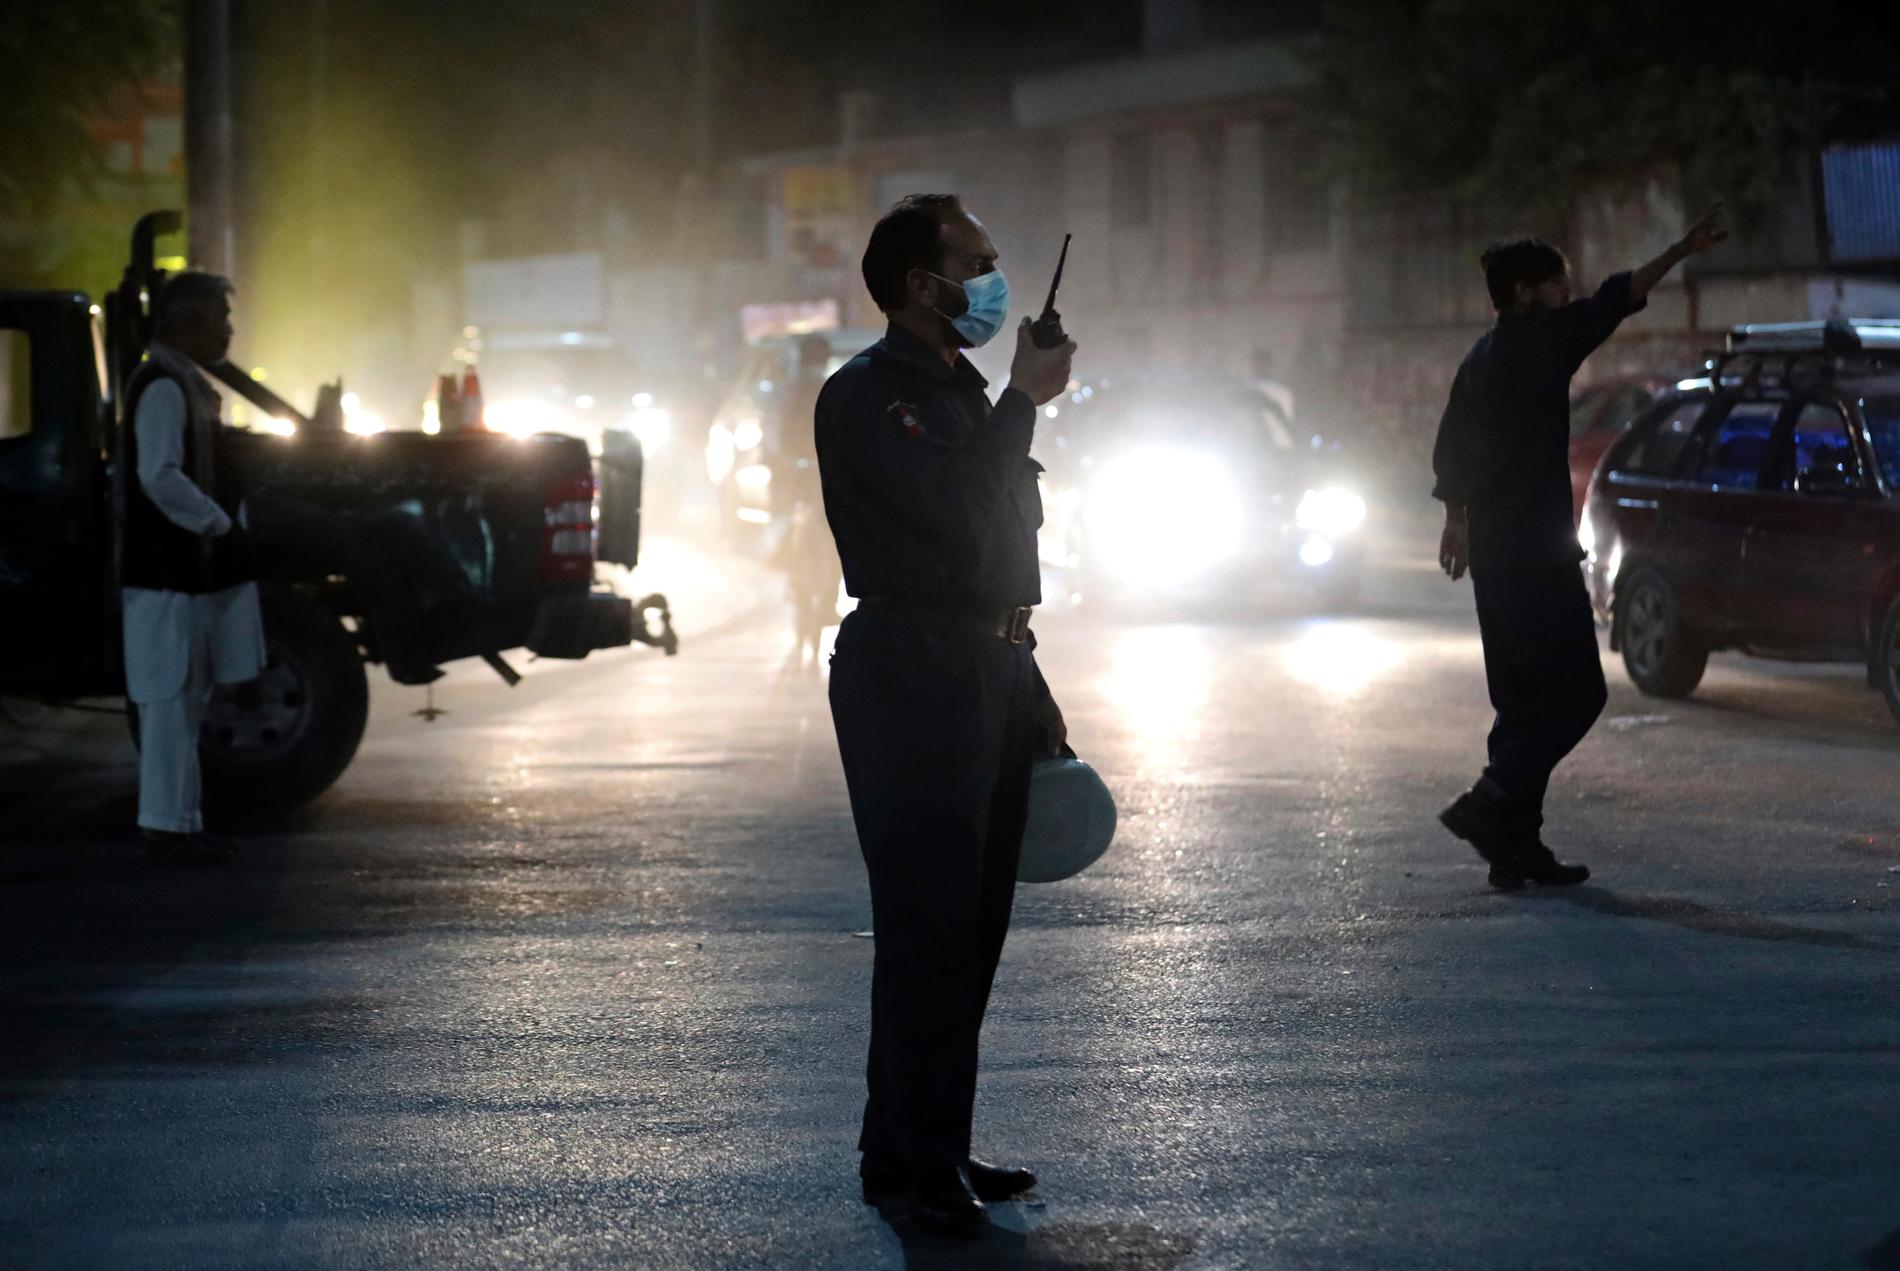 En kraftig explosion skakade Kabuls finare kvarter på tisdagskvällen, samtidigt som talibanerna gör framryckningar kring flera städer i Afghanistan.